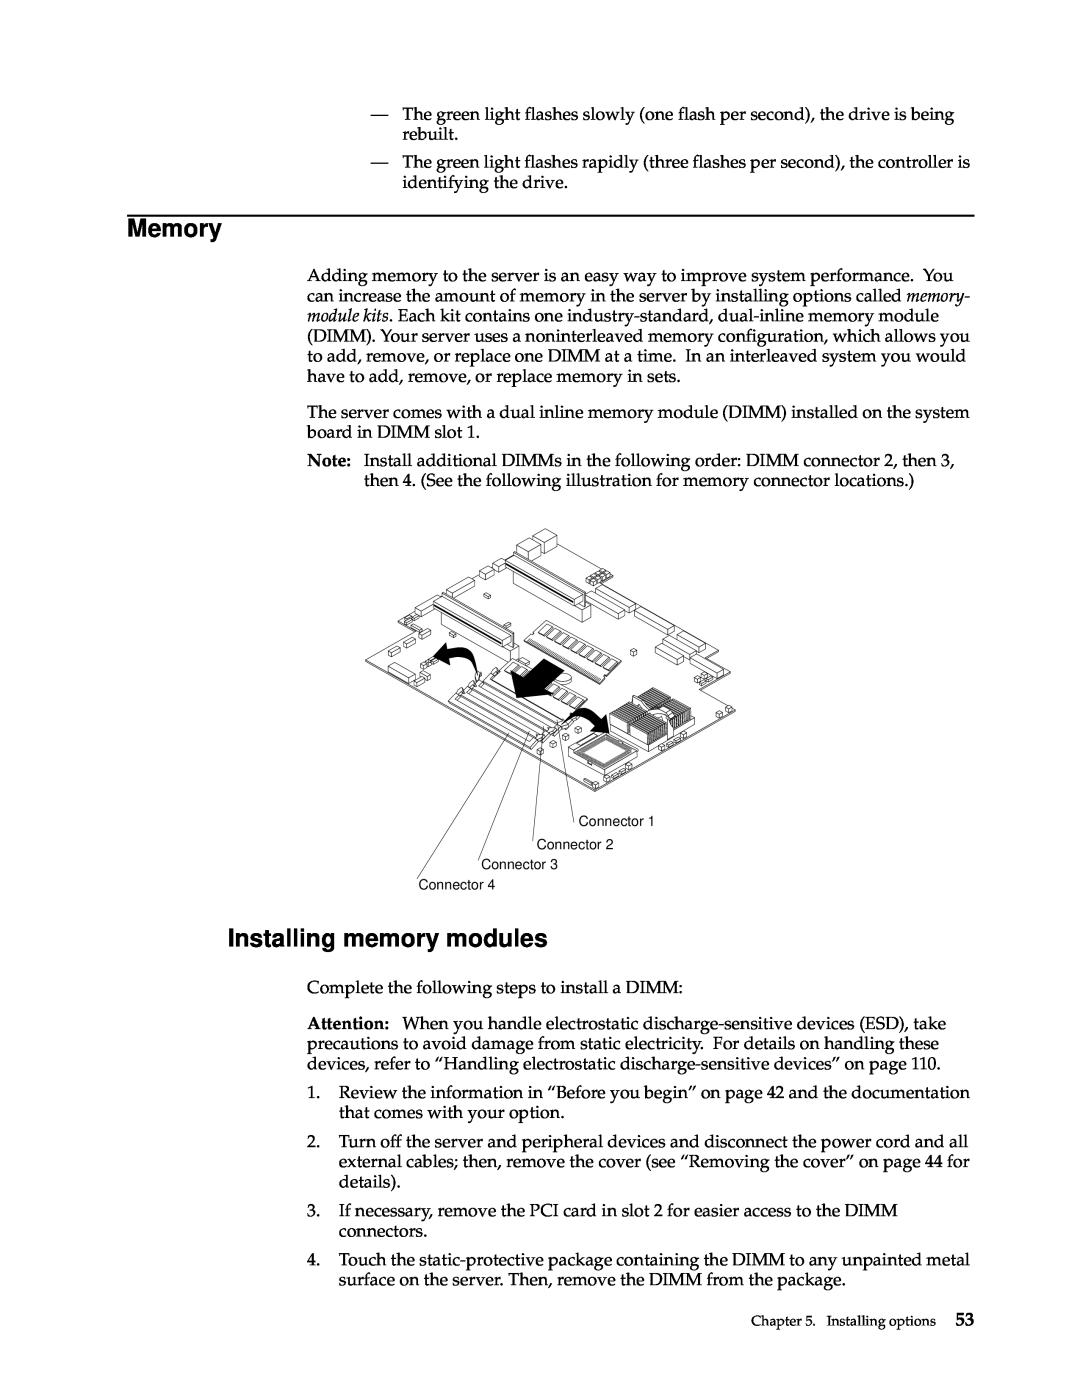 IBM xSeries 330 manual Memory, Installing memory modules 